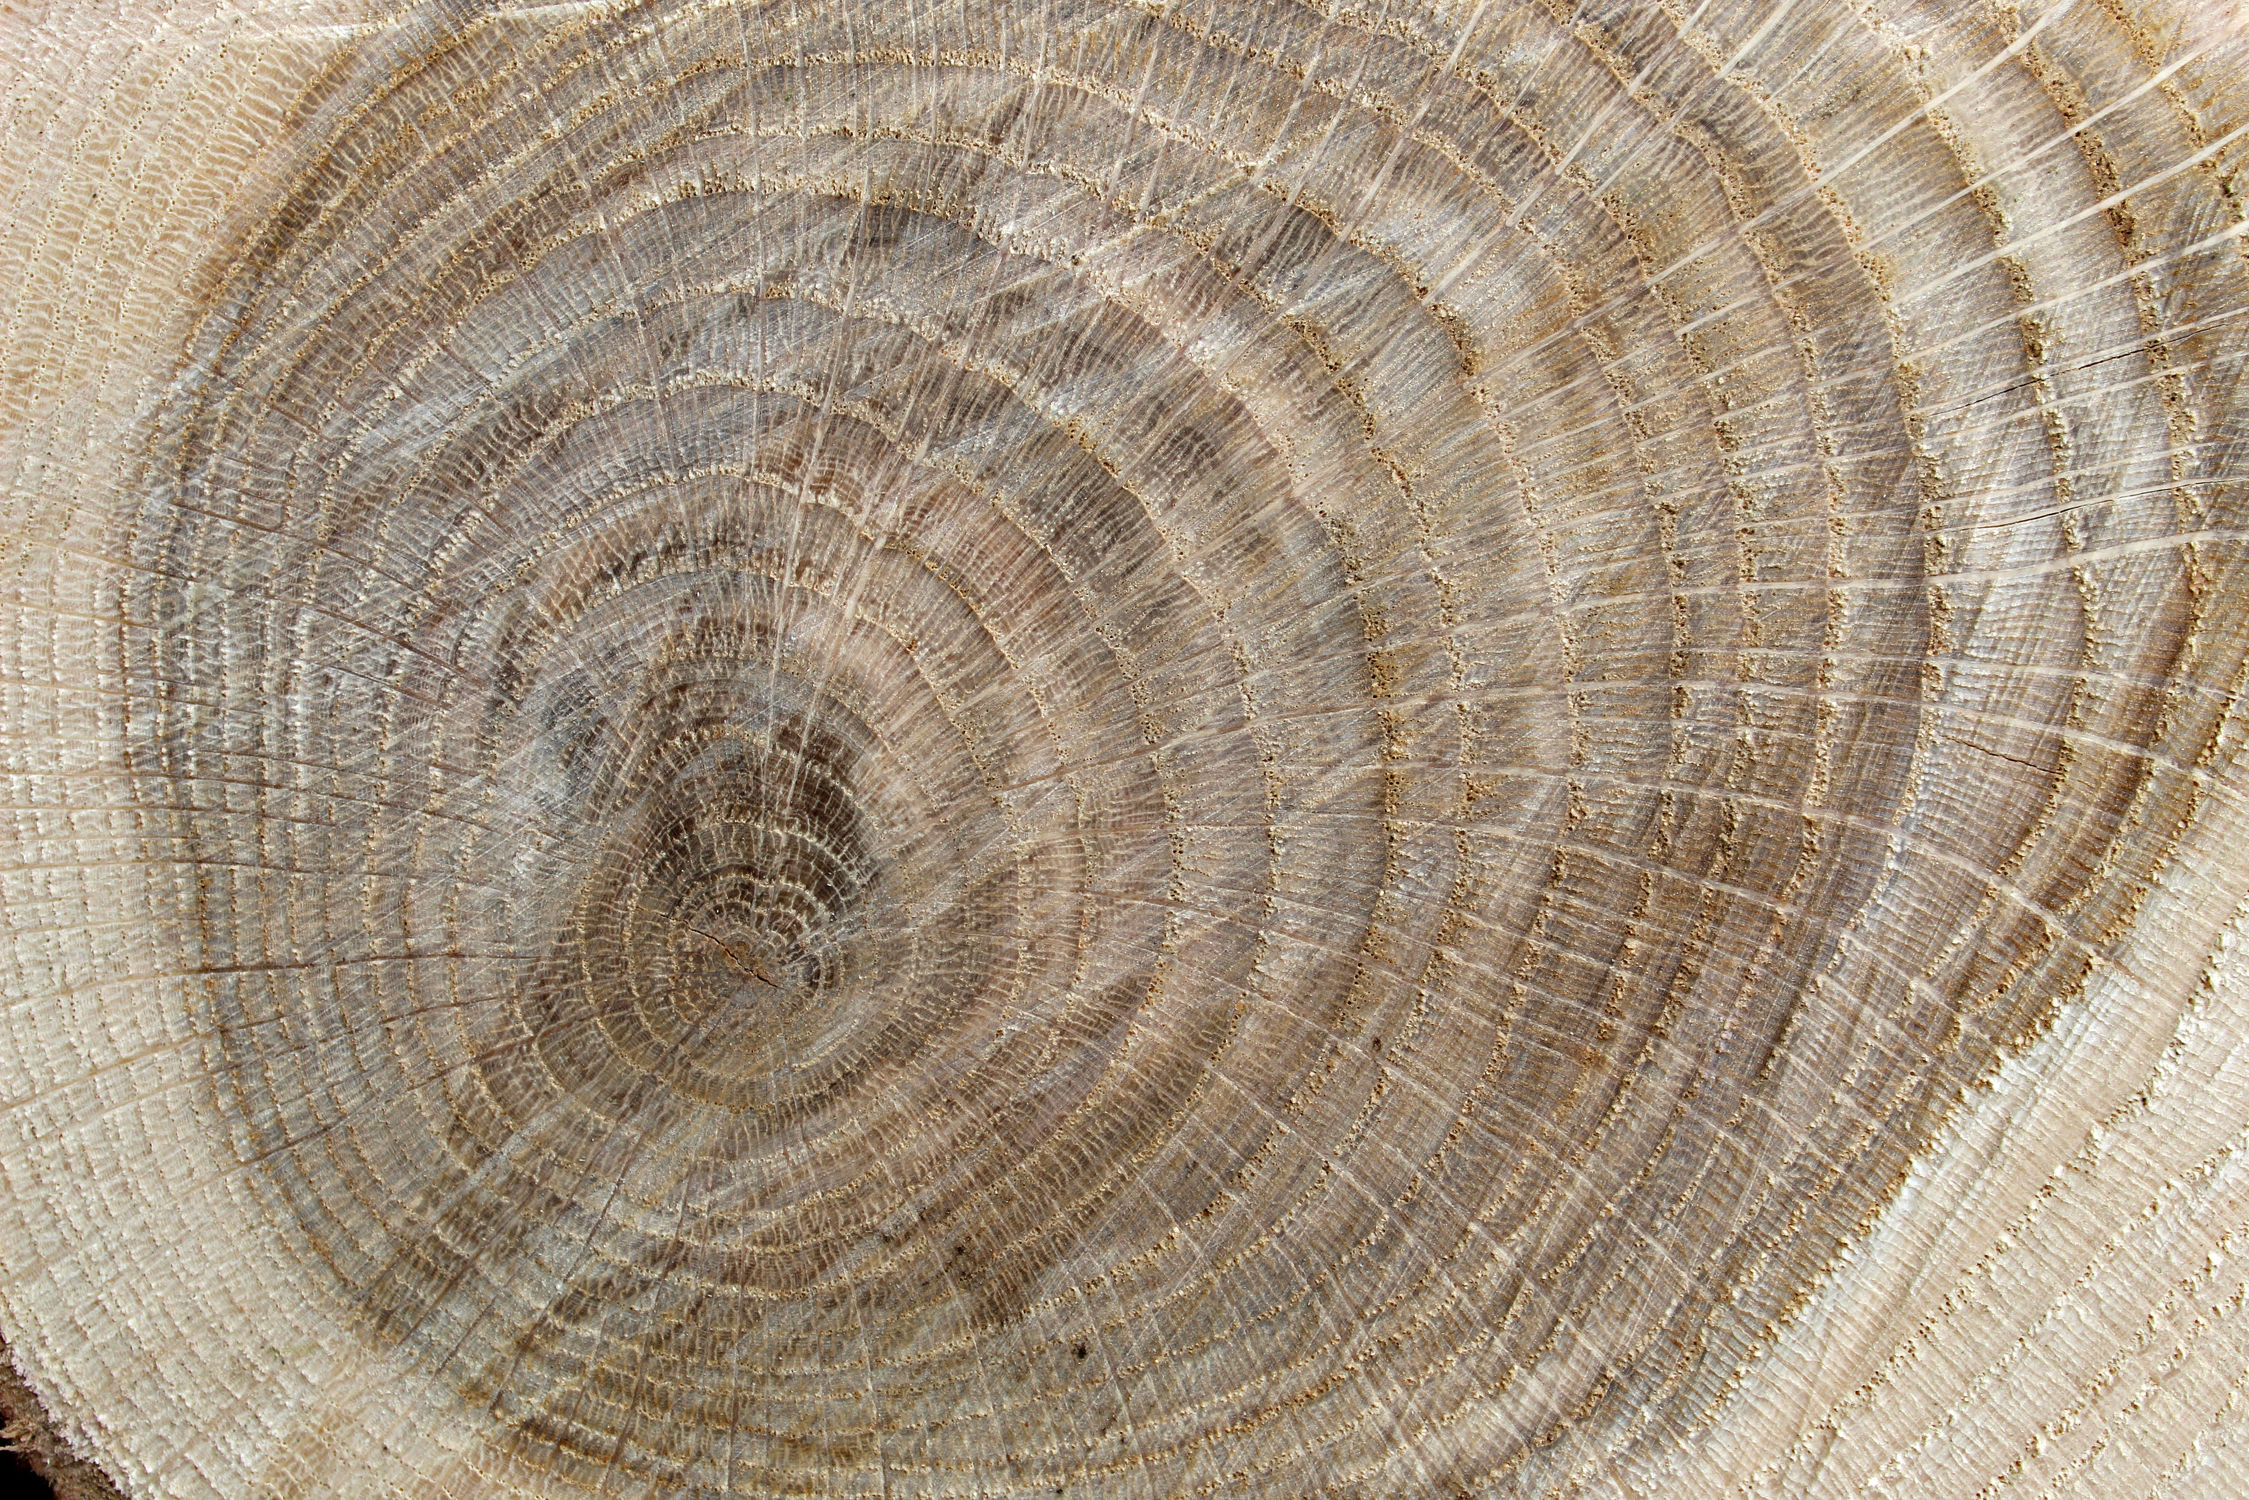 Bild mit Holz, Struktur, Baumstamm, Jahresringe, Holzstruktur, Eiche, Eichenholz, rustikal, brennholz, feuerholz